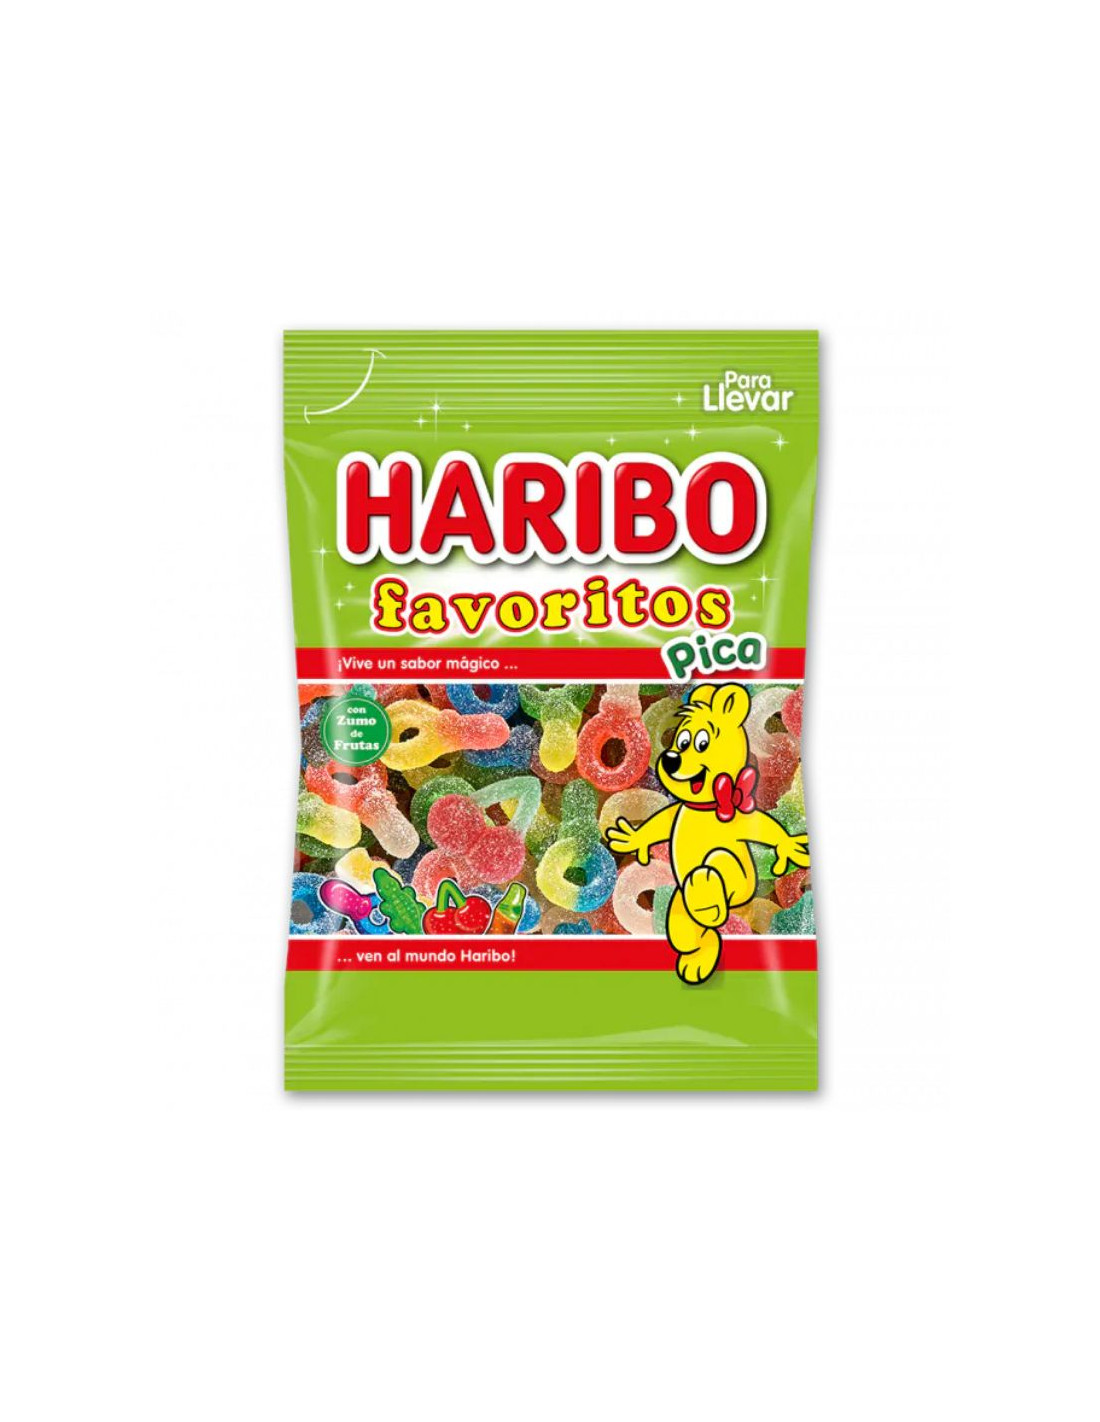 Haribo Favoritos 18 bolsas de 90g, comprar online